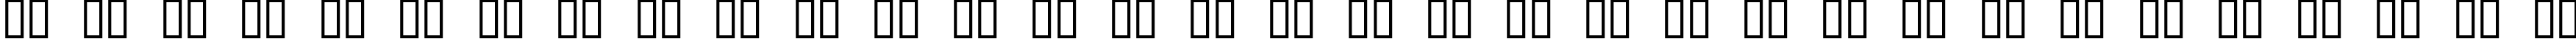 Пример написания русского алфавита шрифтом Lewinsky